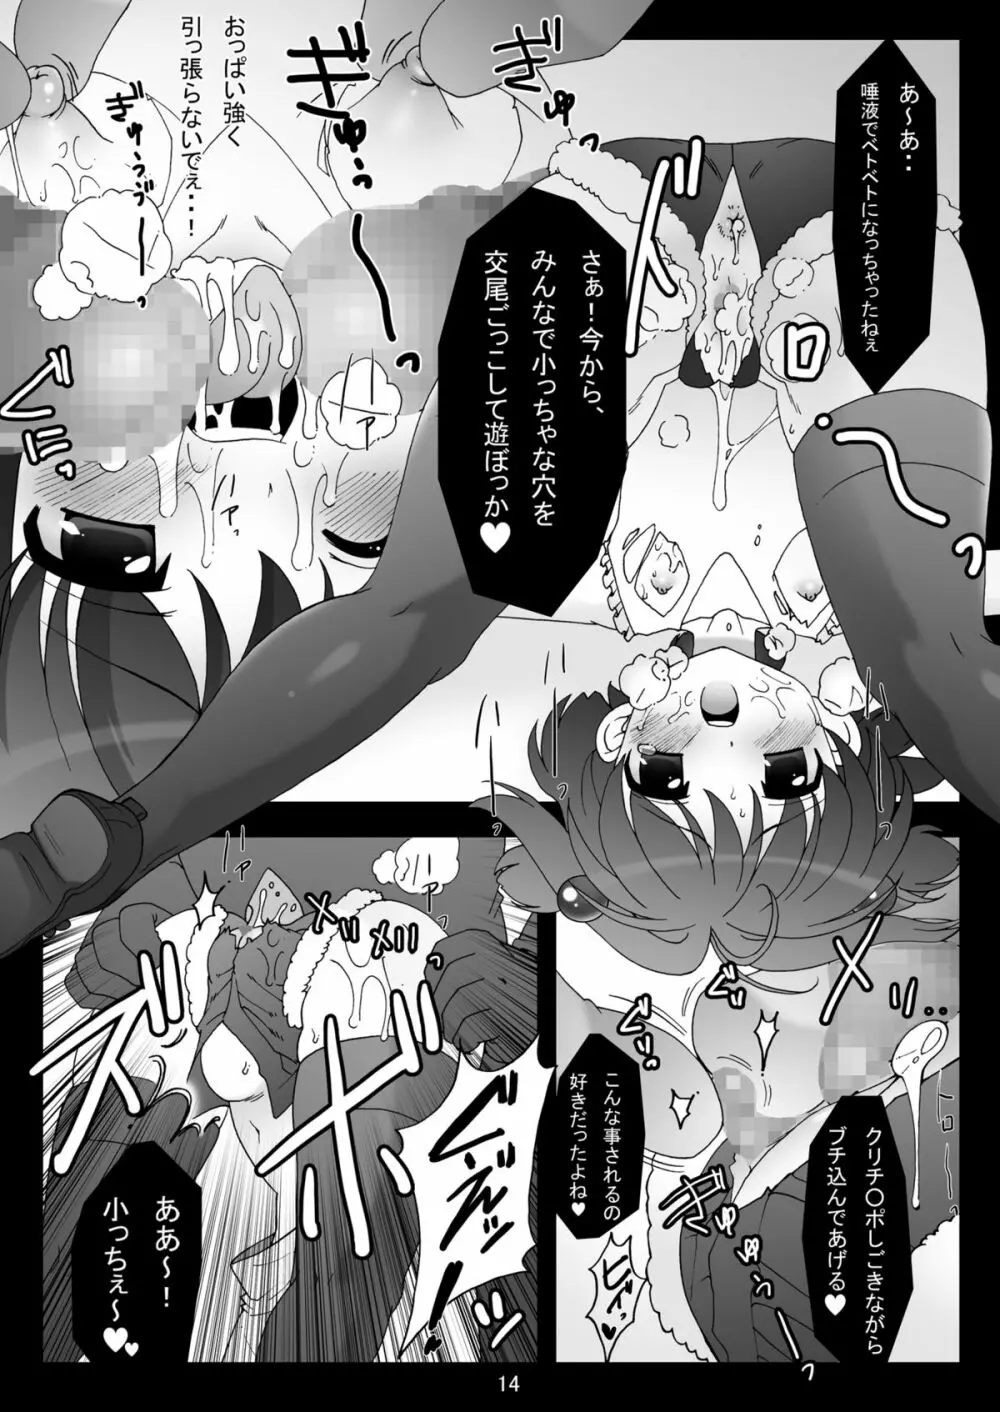 sakura twilight time - page14